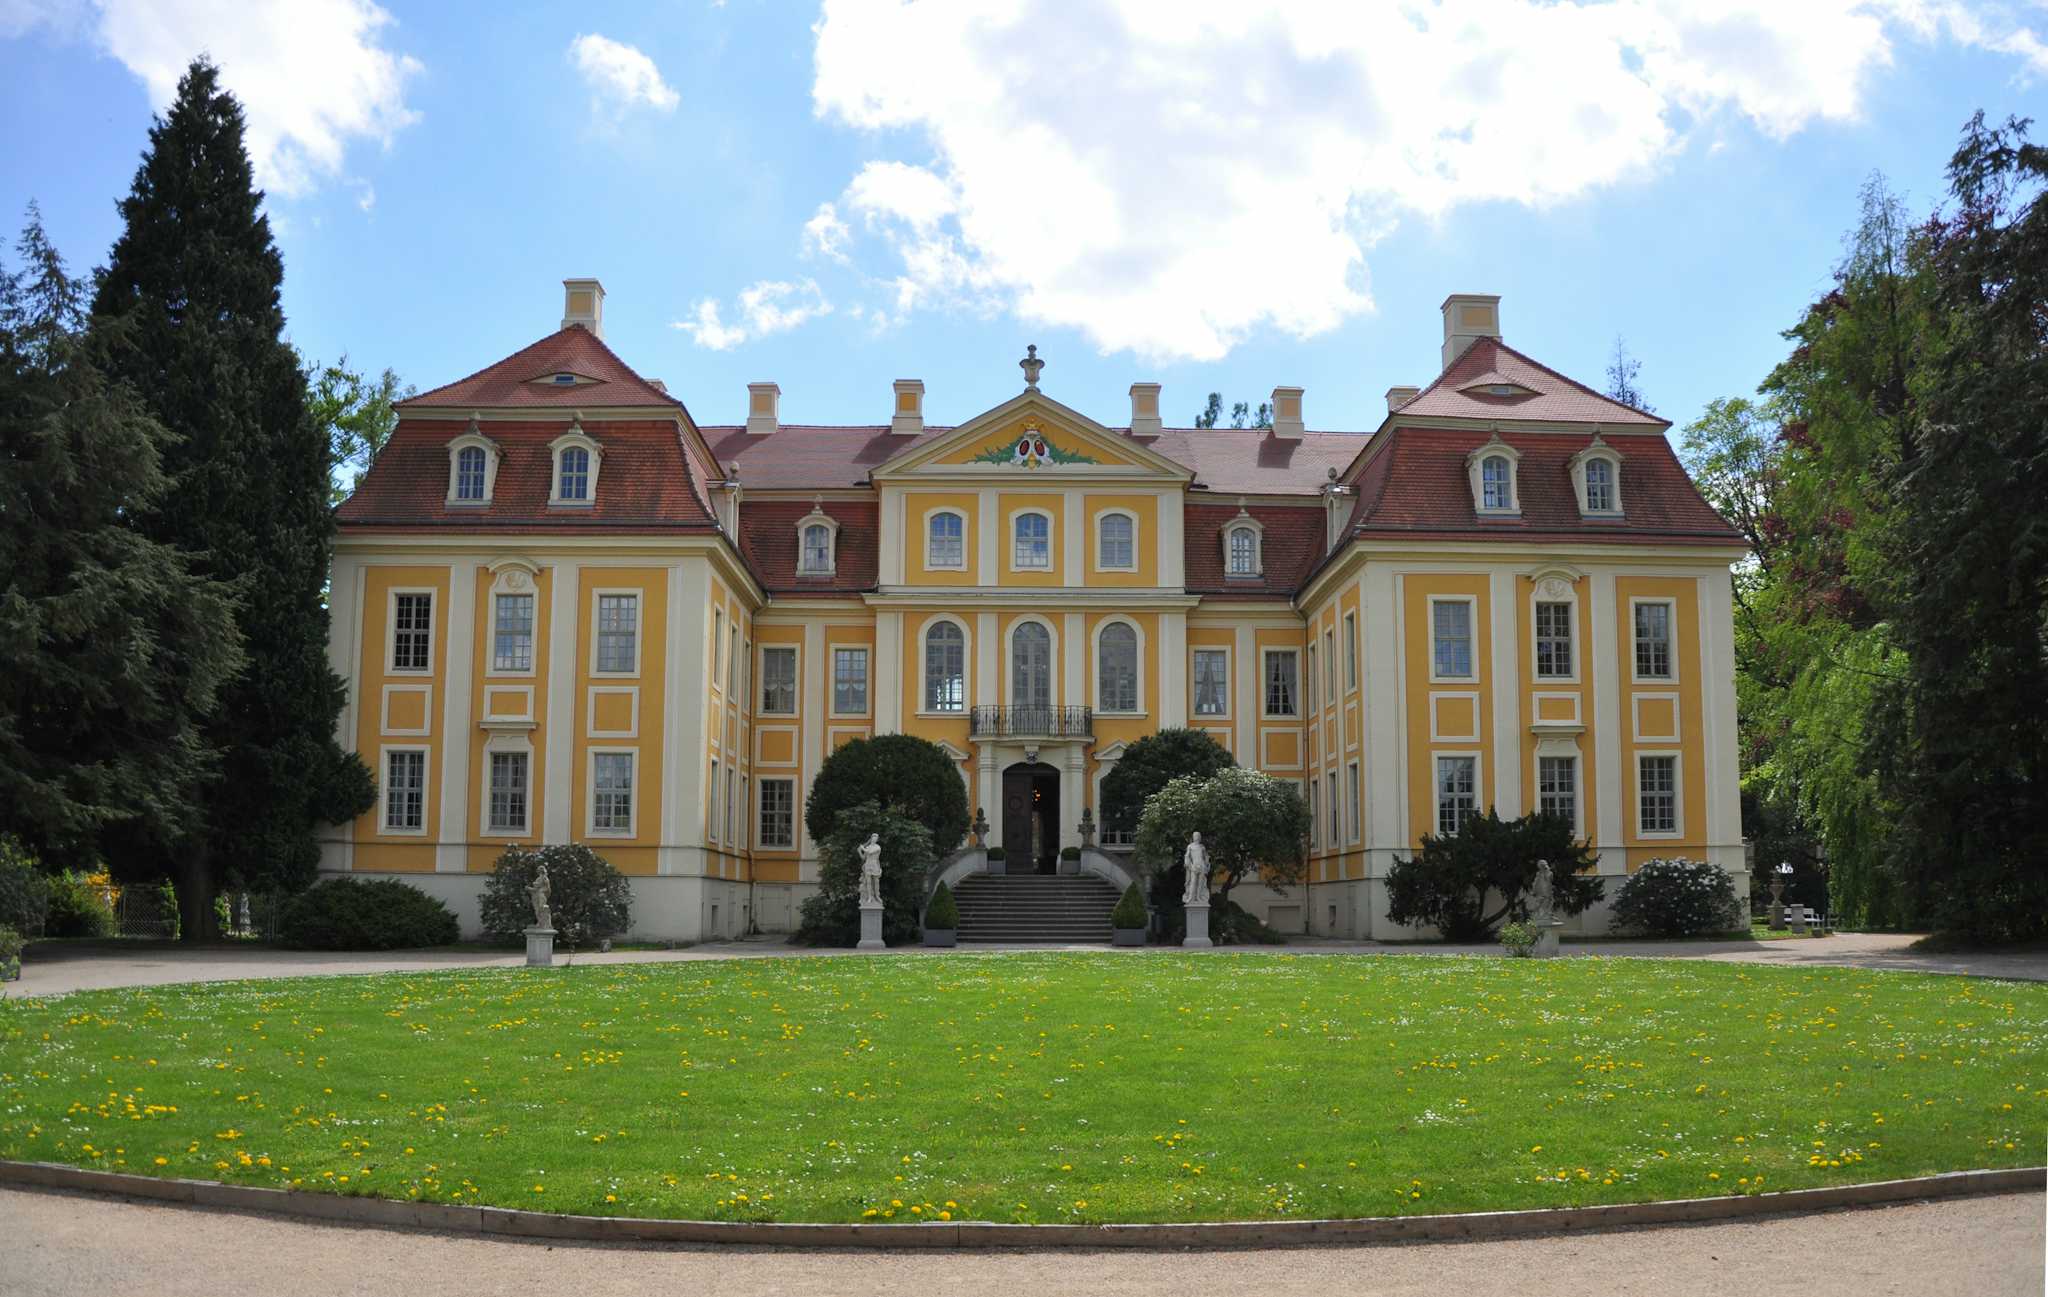 Rammenau Baroque Castle